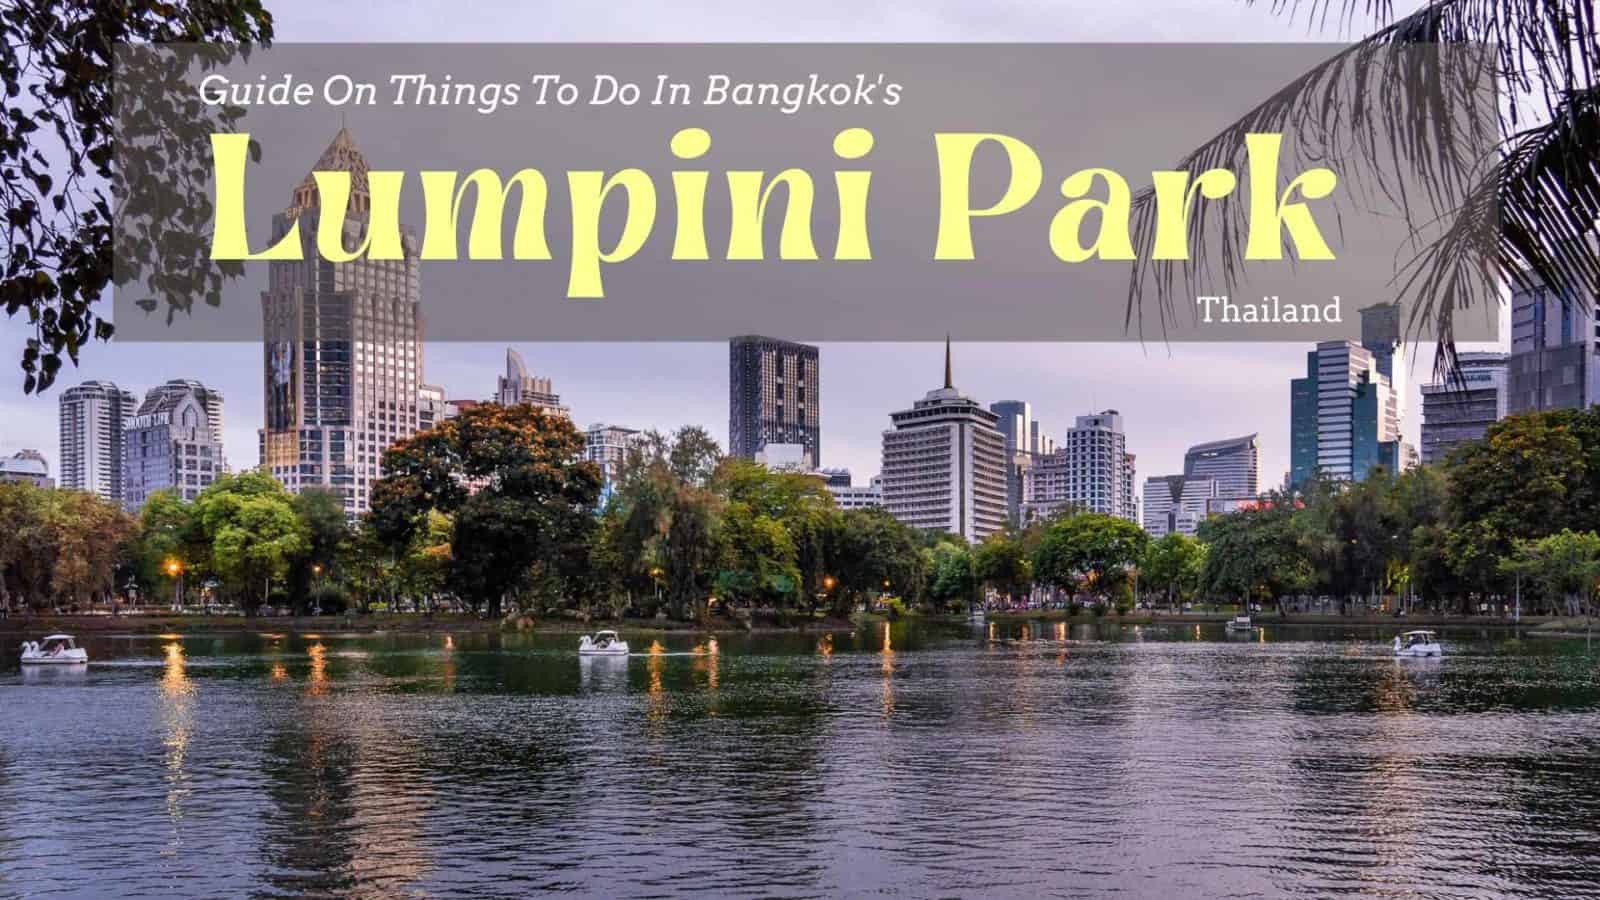 隆比尼公园 – 曼谷绿洲活动指南